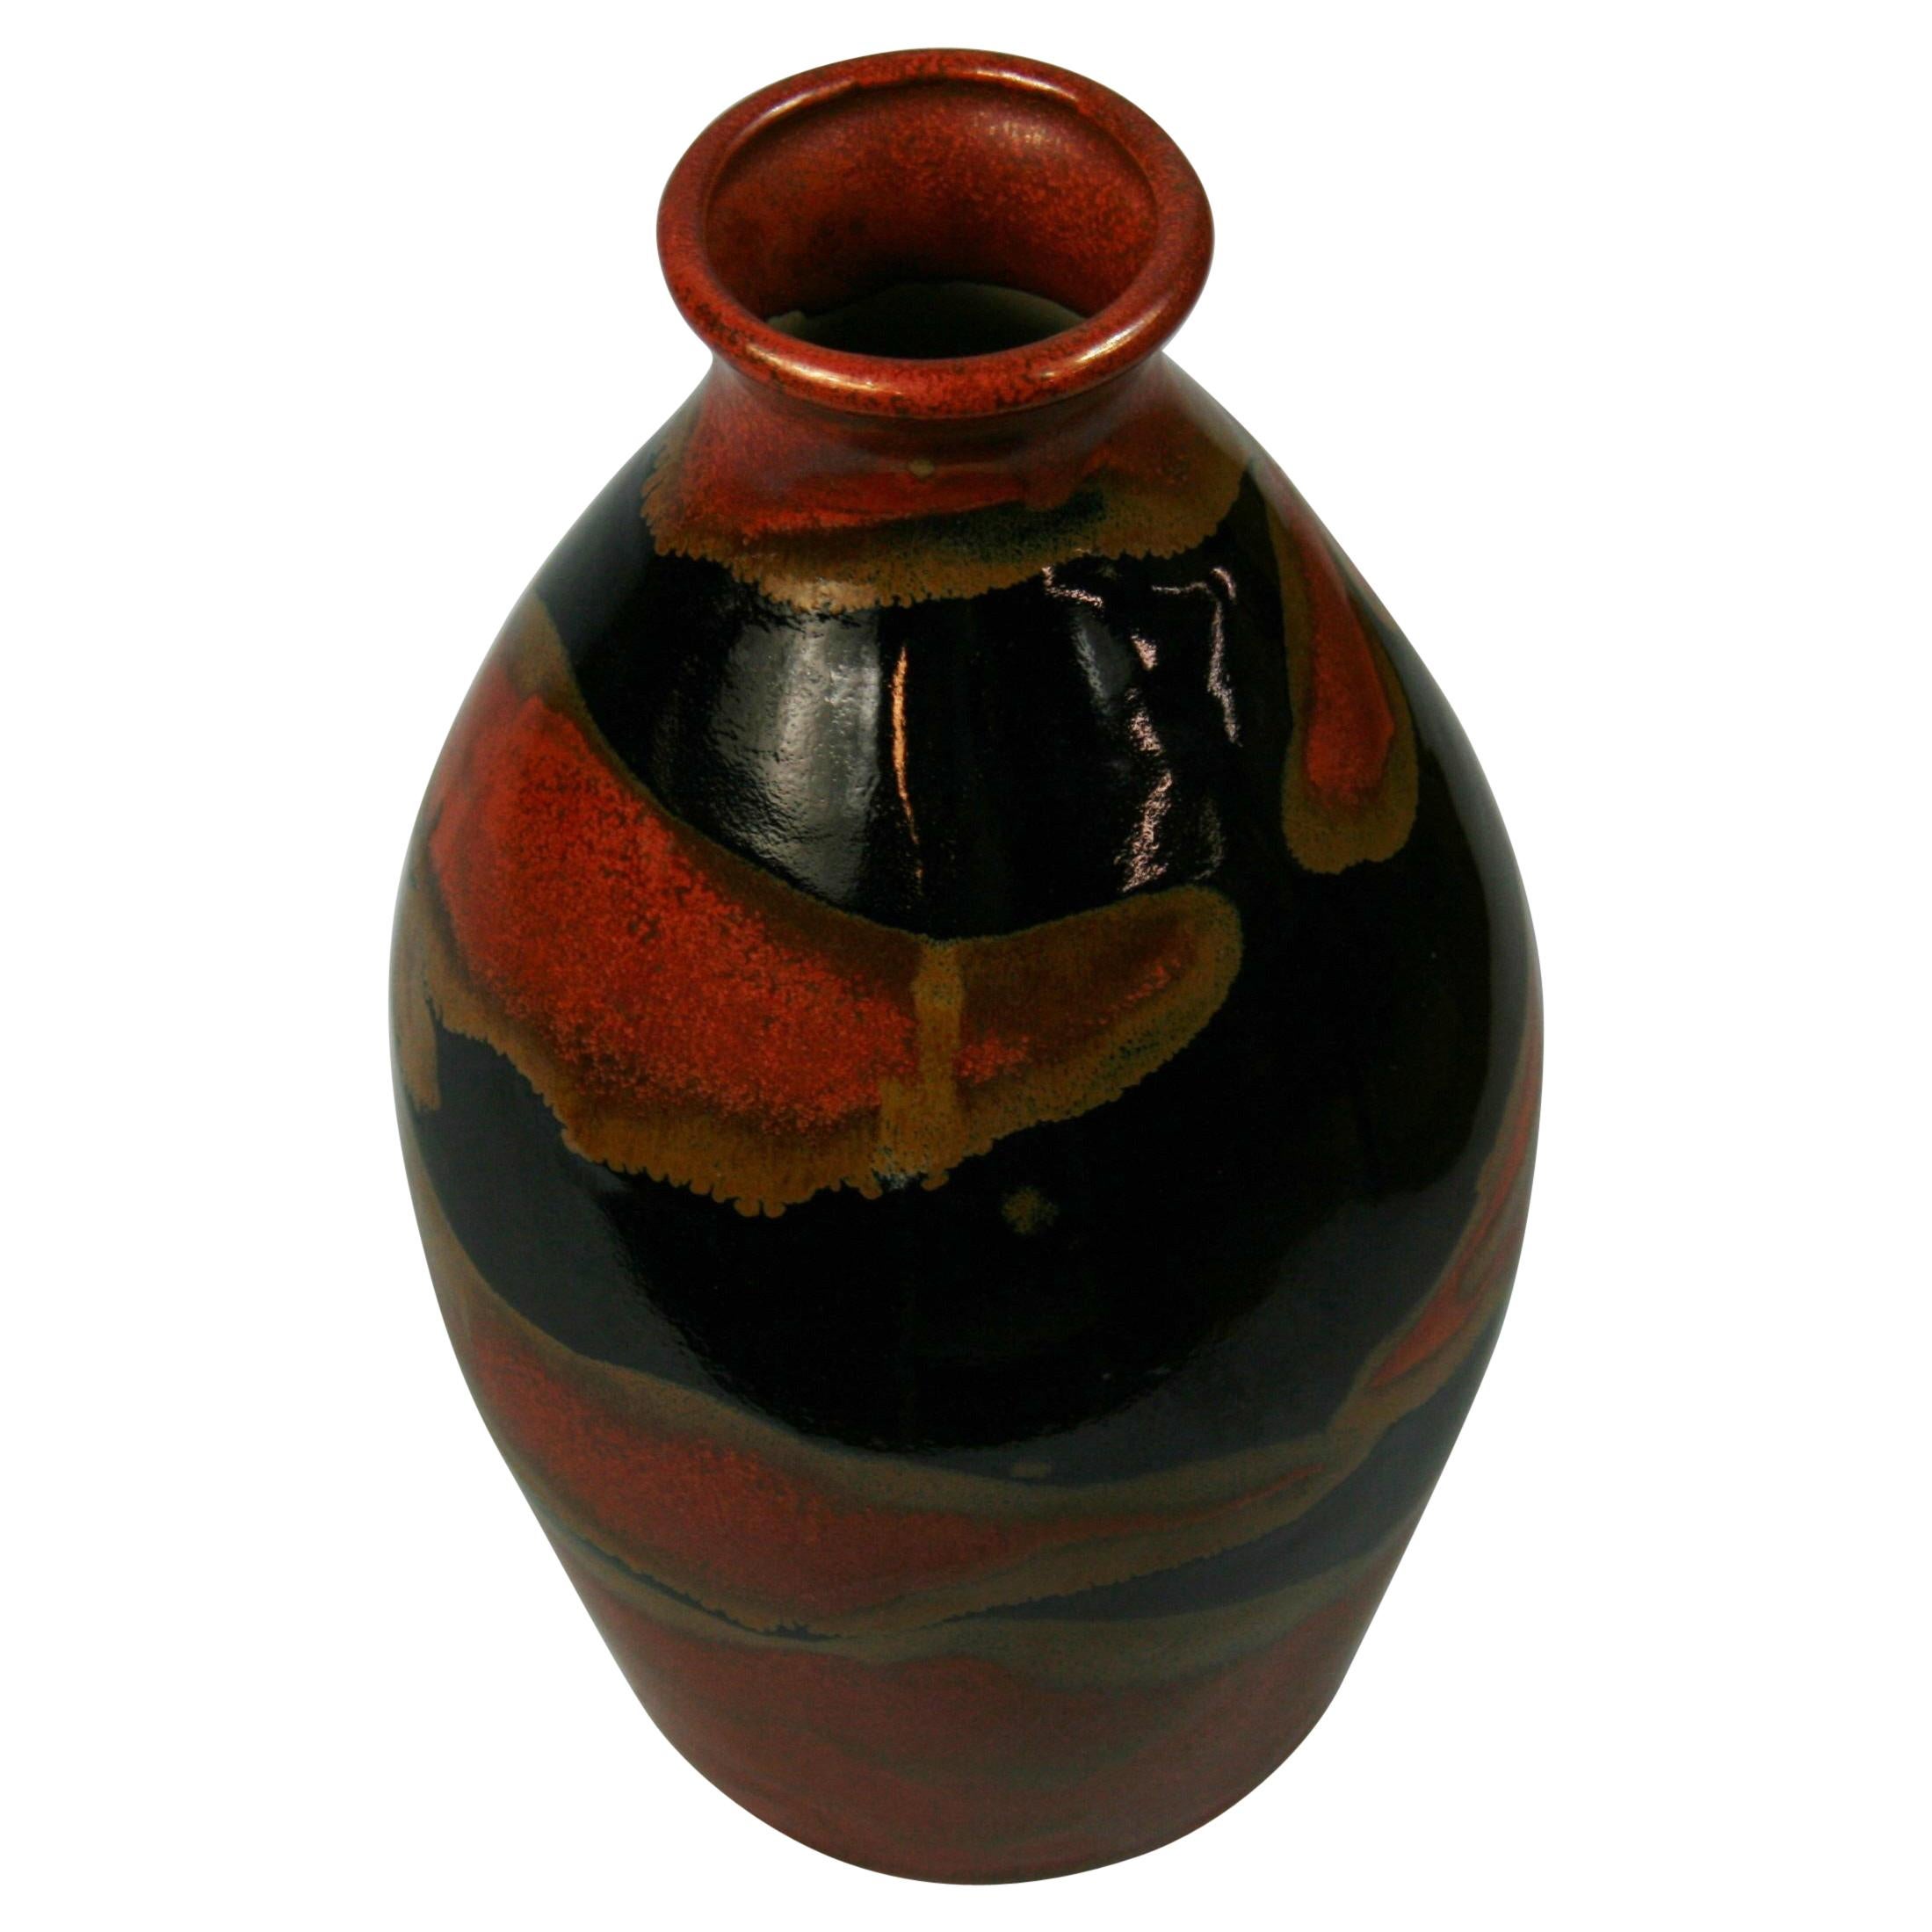 Vase en céramique émaillée faite par un artiste japonais